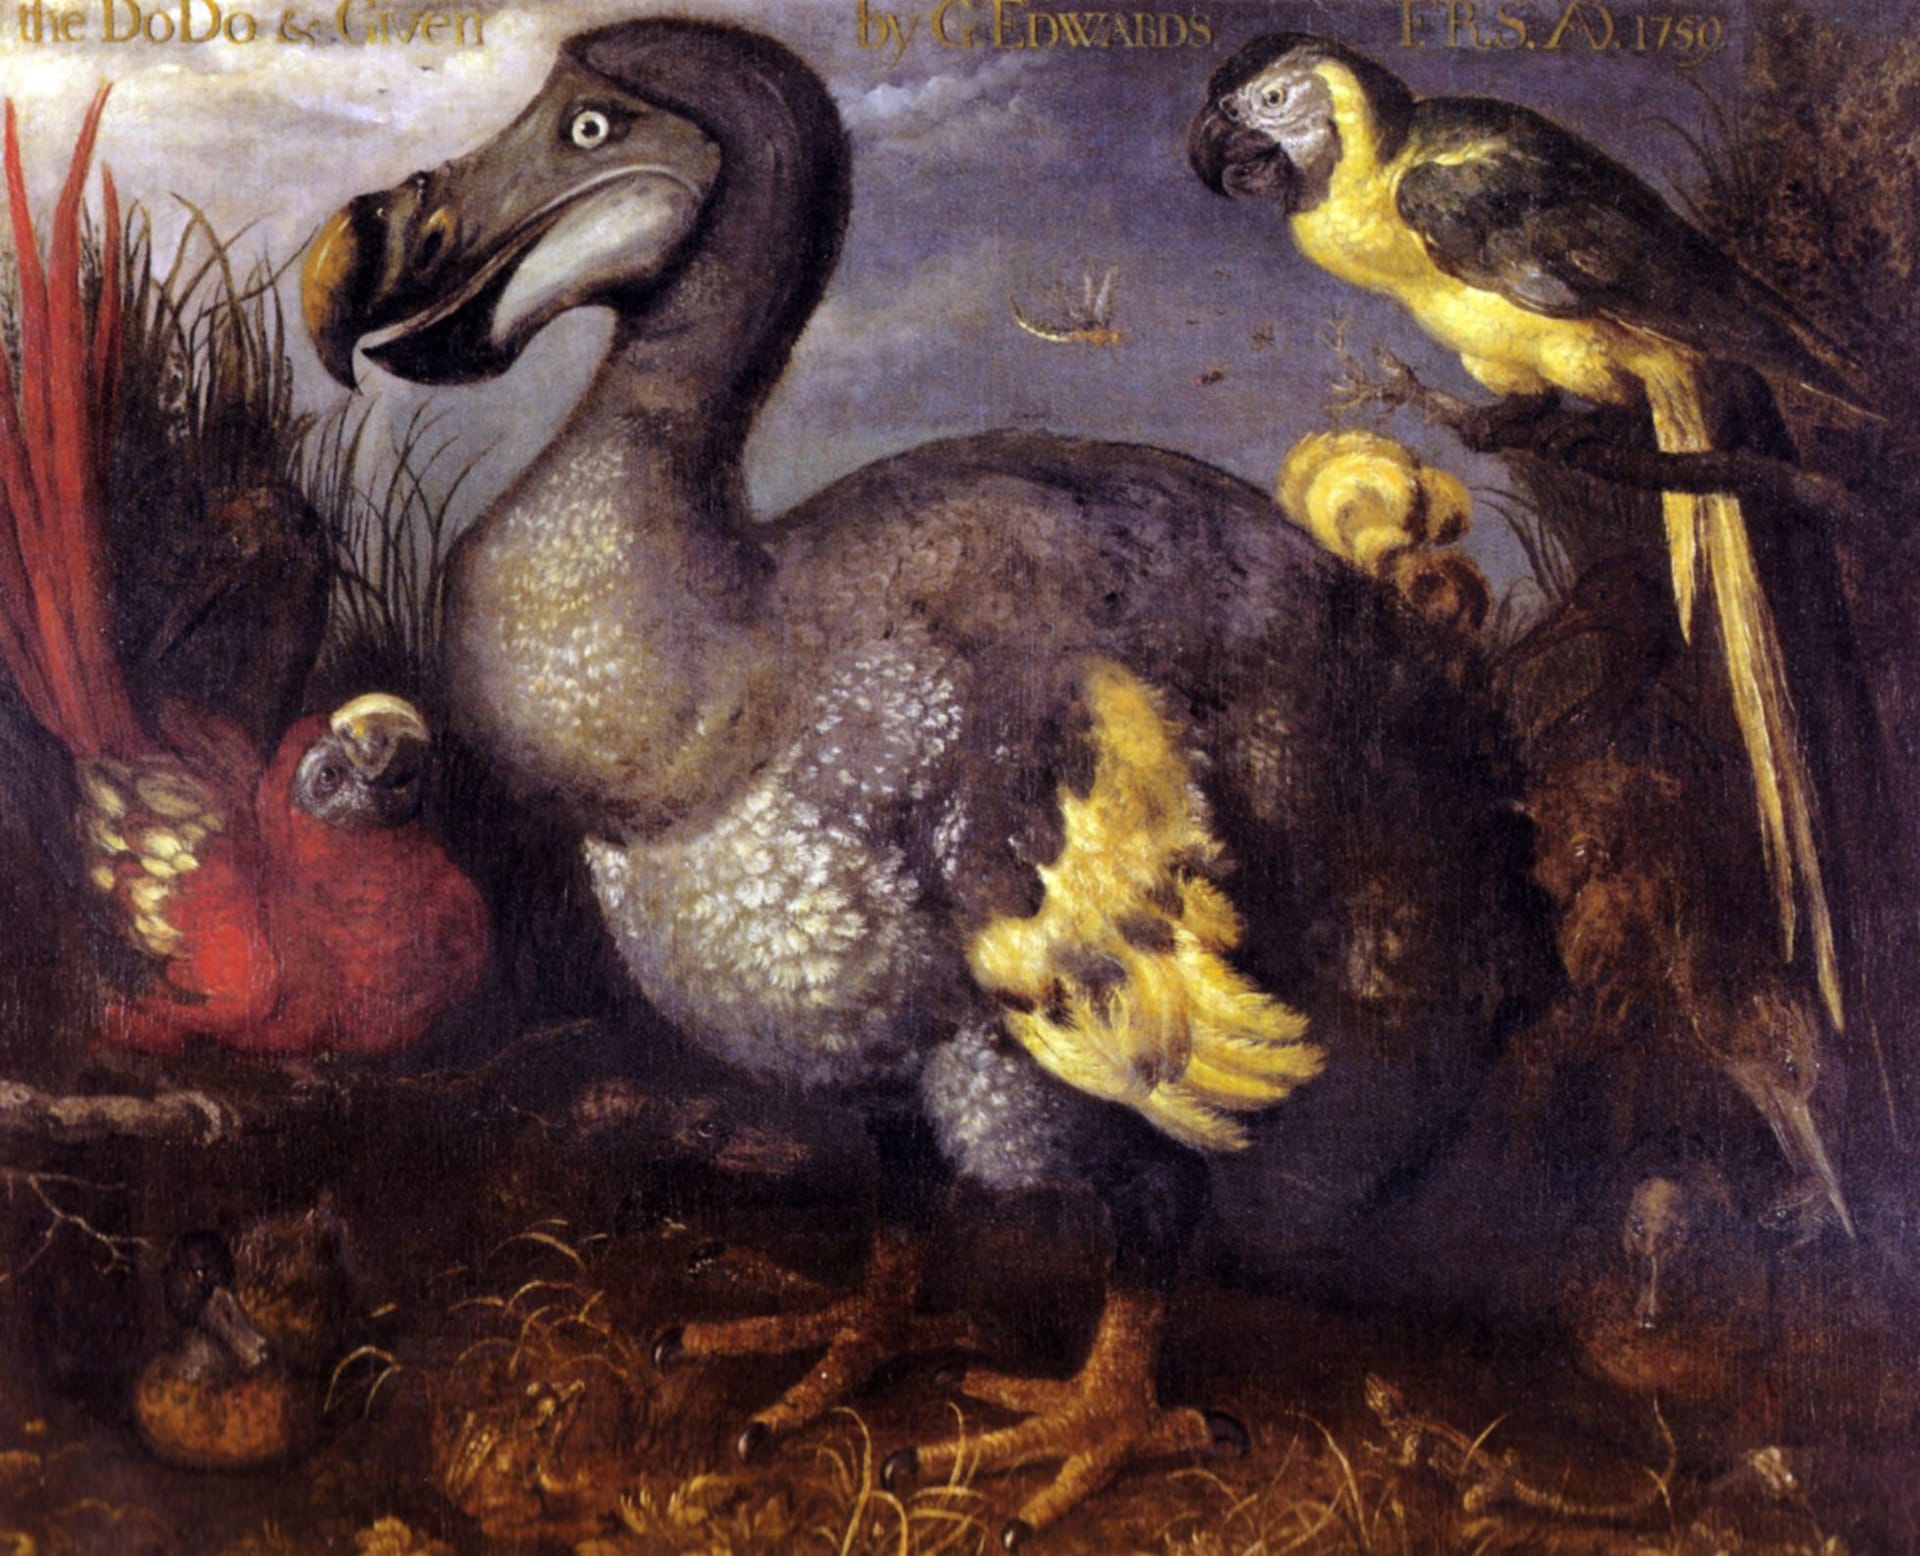 Zeitgenössische Darstellung eines Dodo aus den späten 1620er-Jahren: Damals war der Vogel noch nicht ausgestorben.